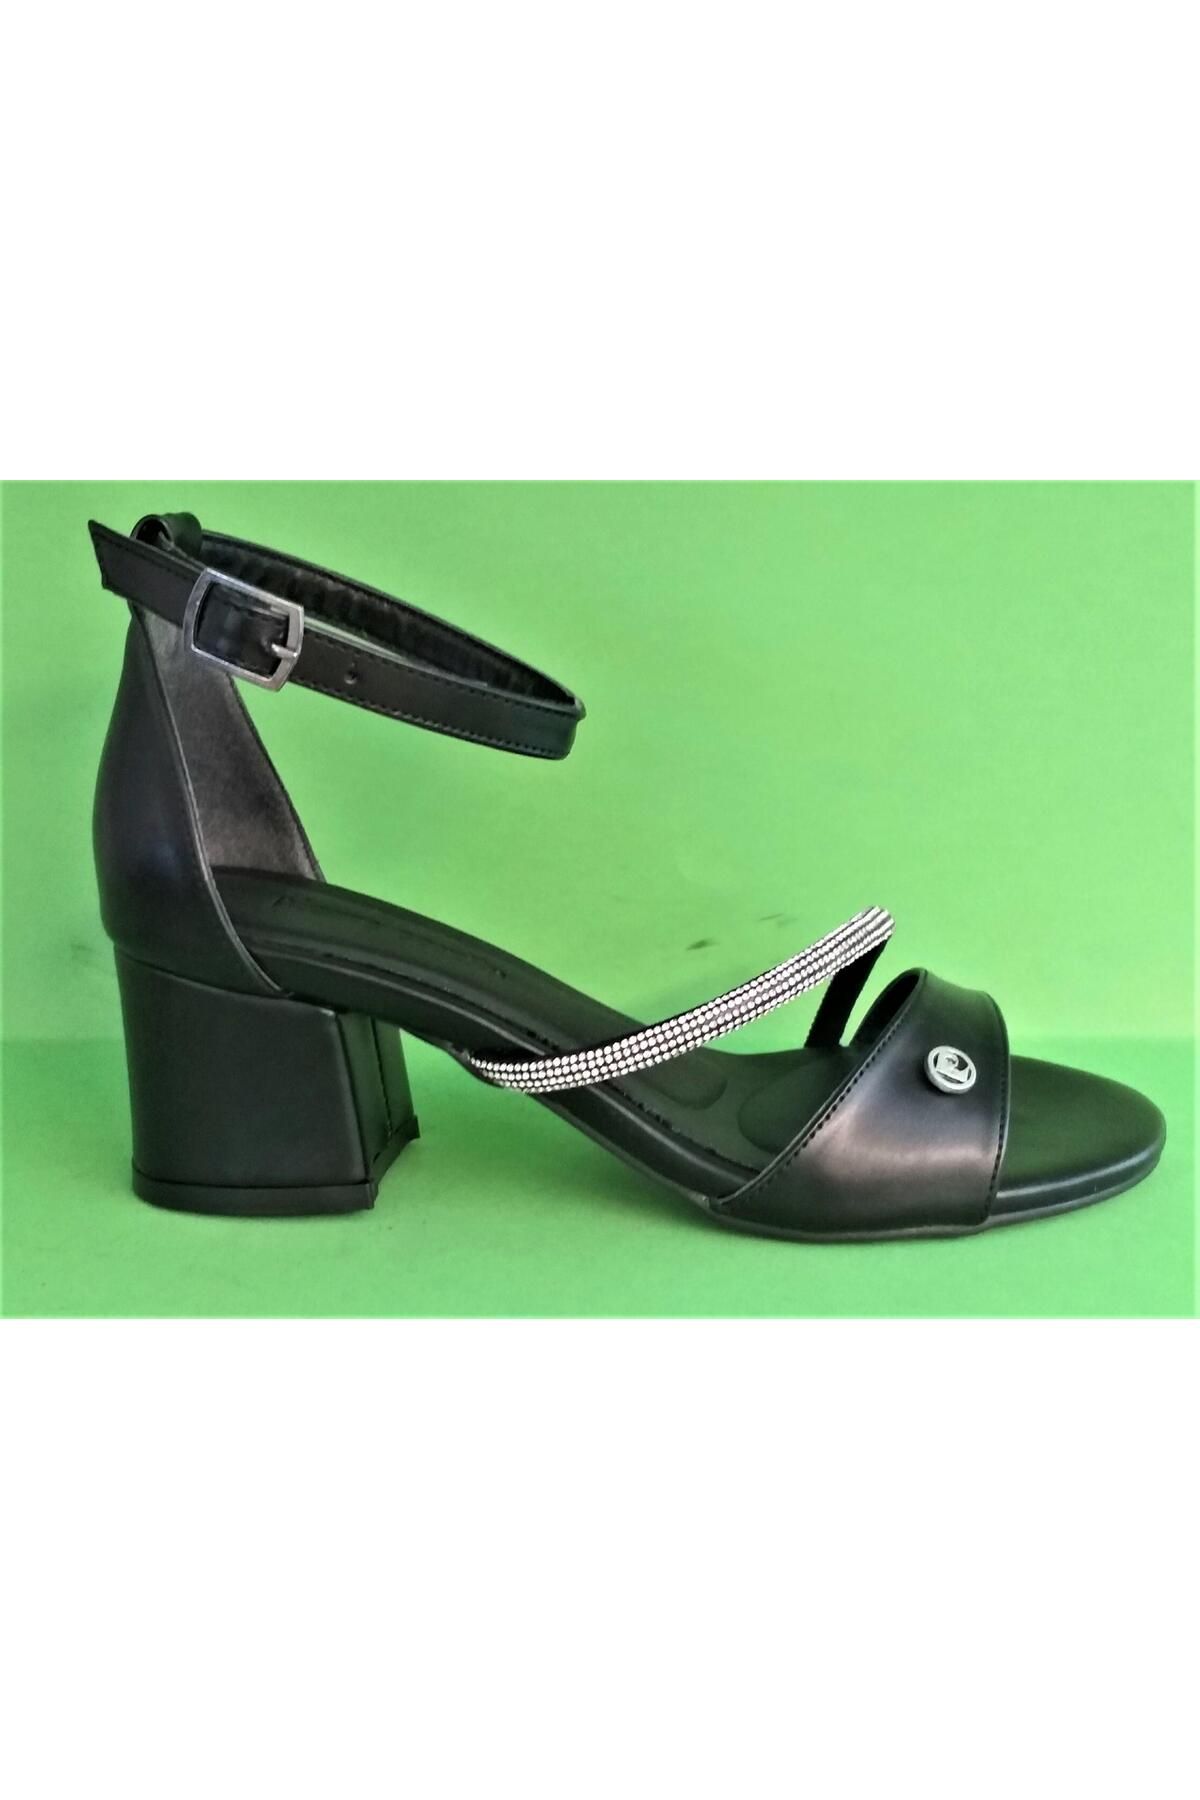 Pierre Cardin Pc52207 Kadın Taşlı Topuklu Abiye Ayakkabı